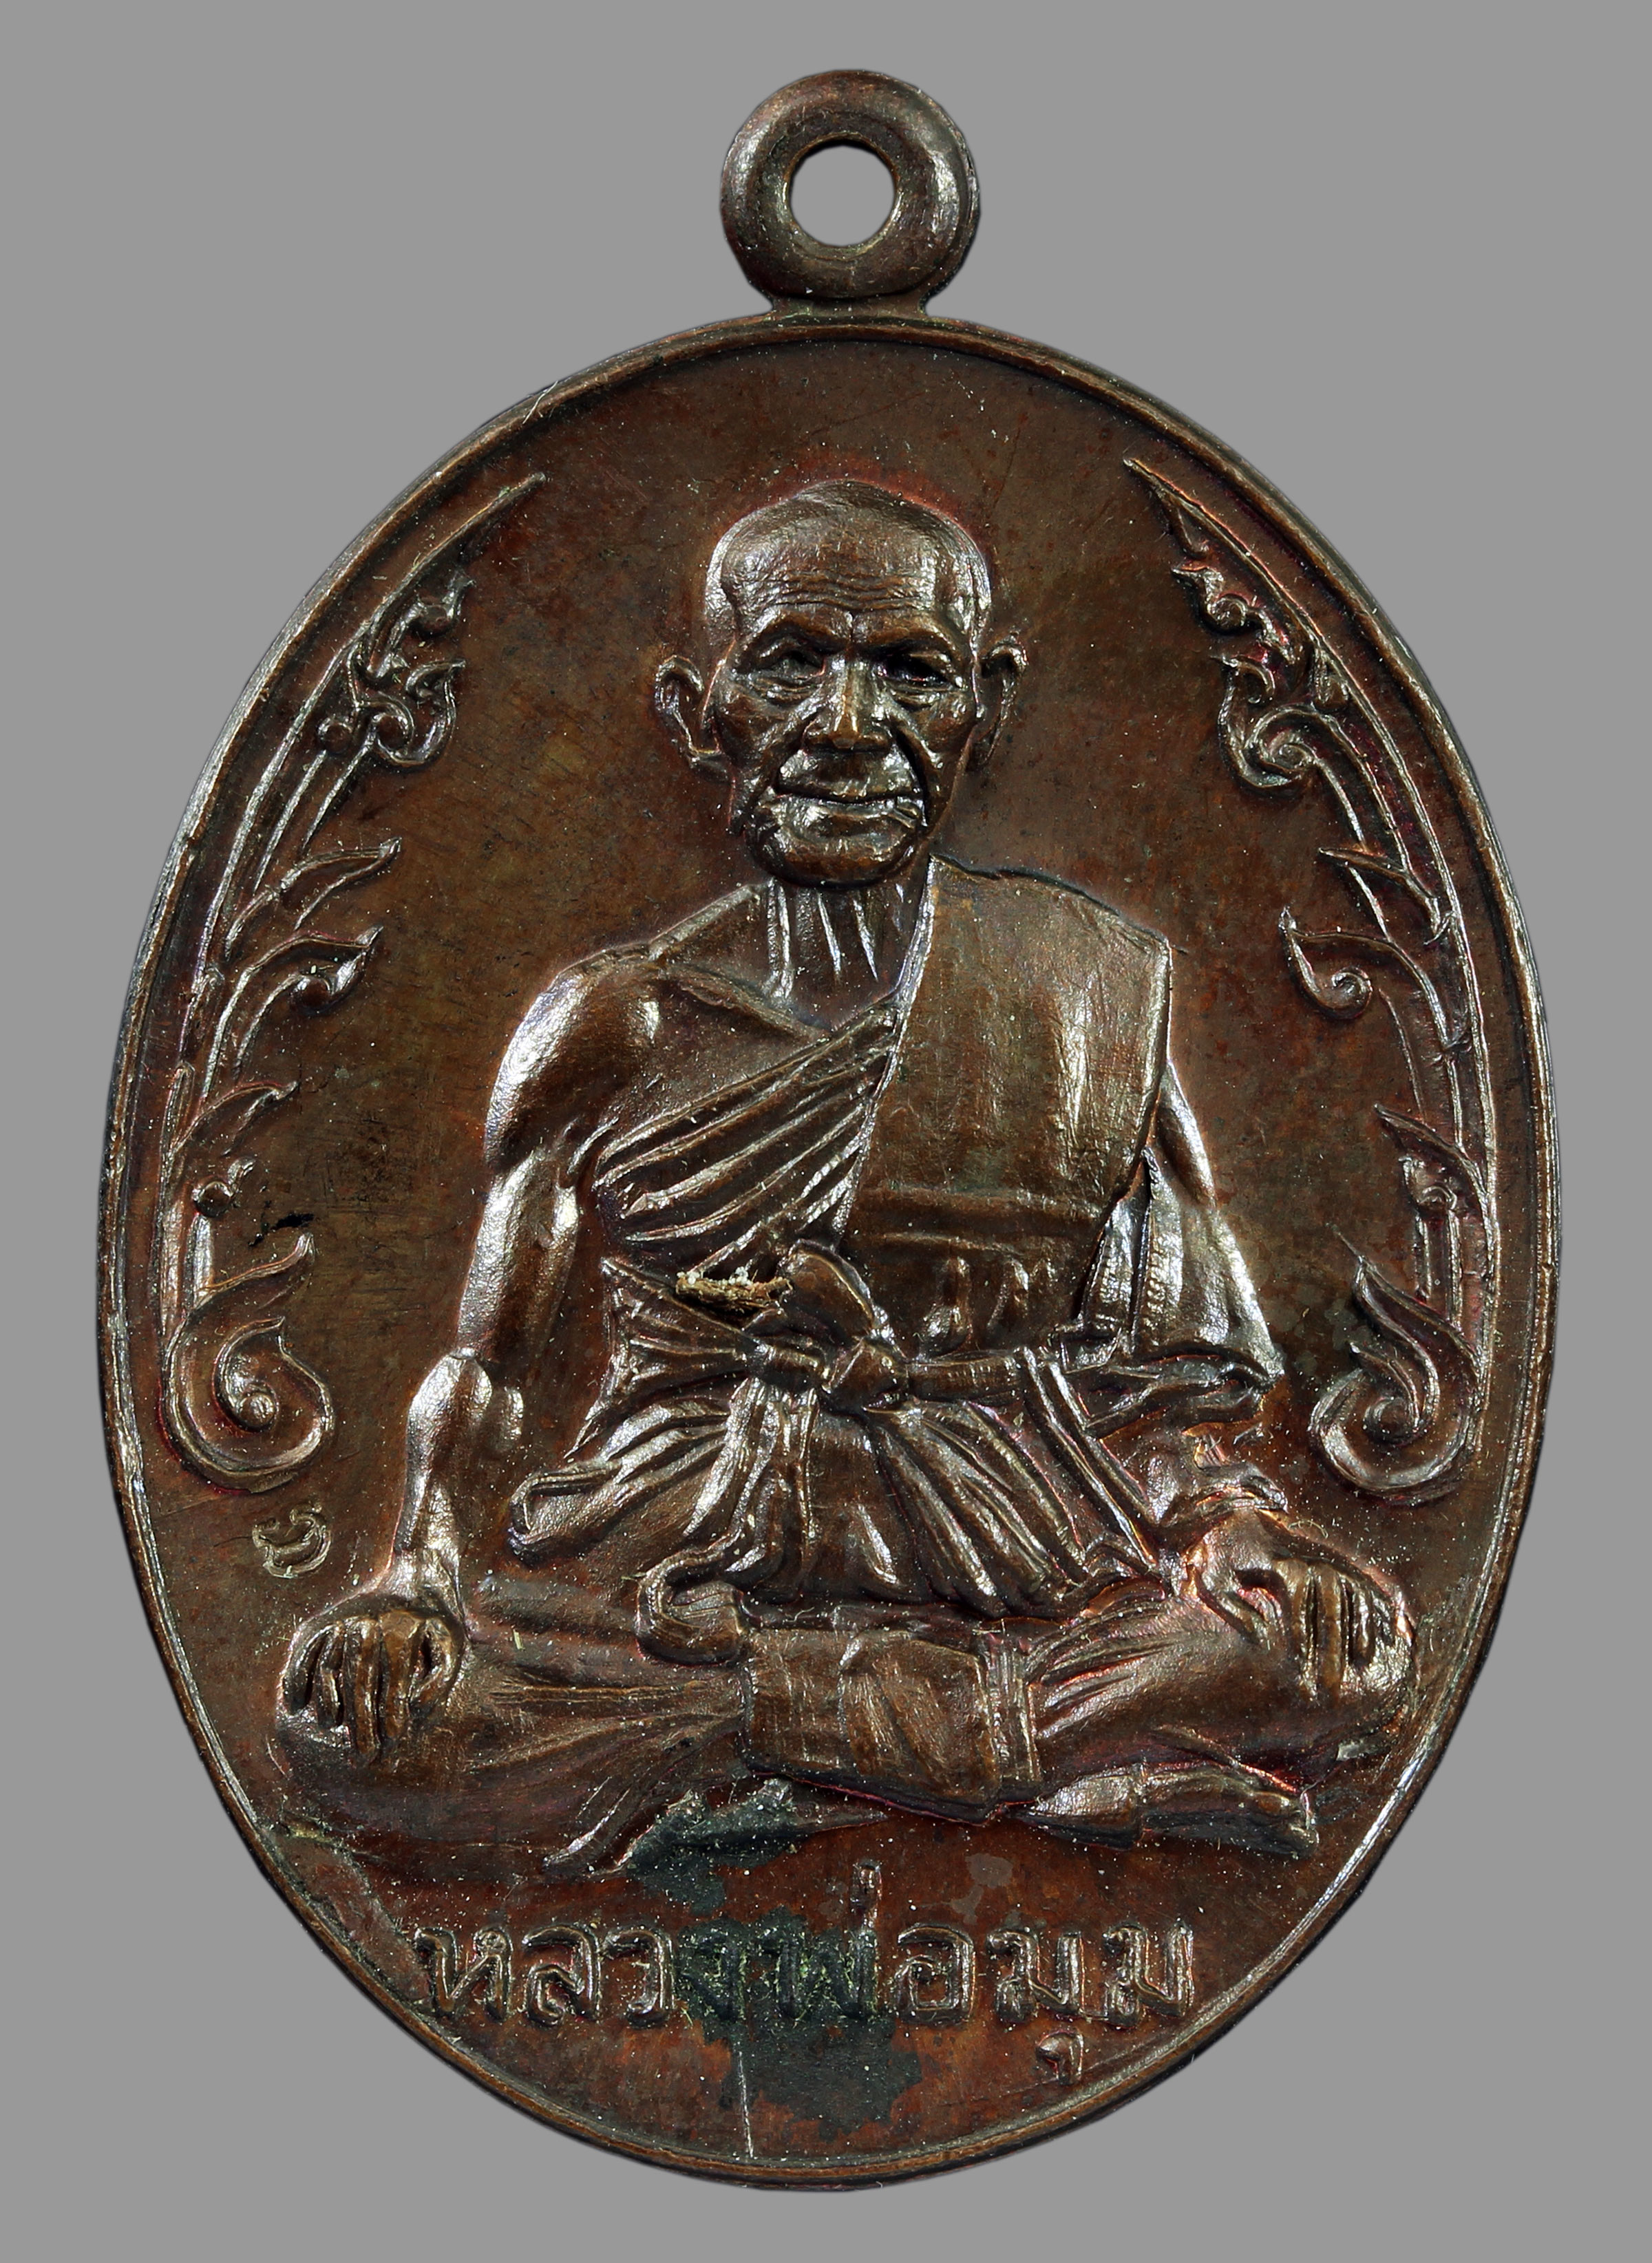 เหรียญนักกล้าม หลวงพ่อมุม วัดปราสาทเยอร์ เนื้อทองแดง ปี2517 พิมพ์นิยมประคตยาว 